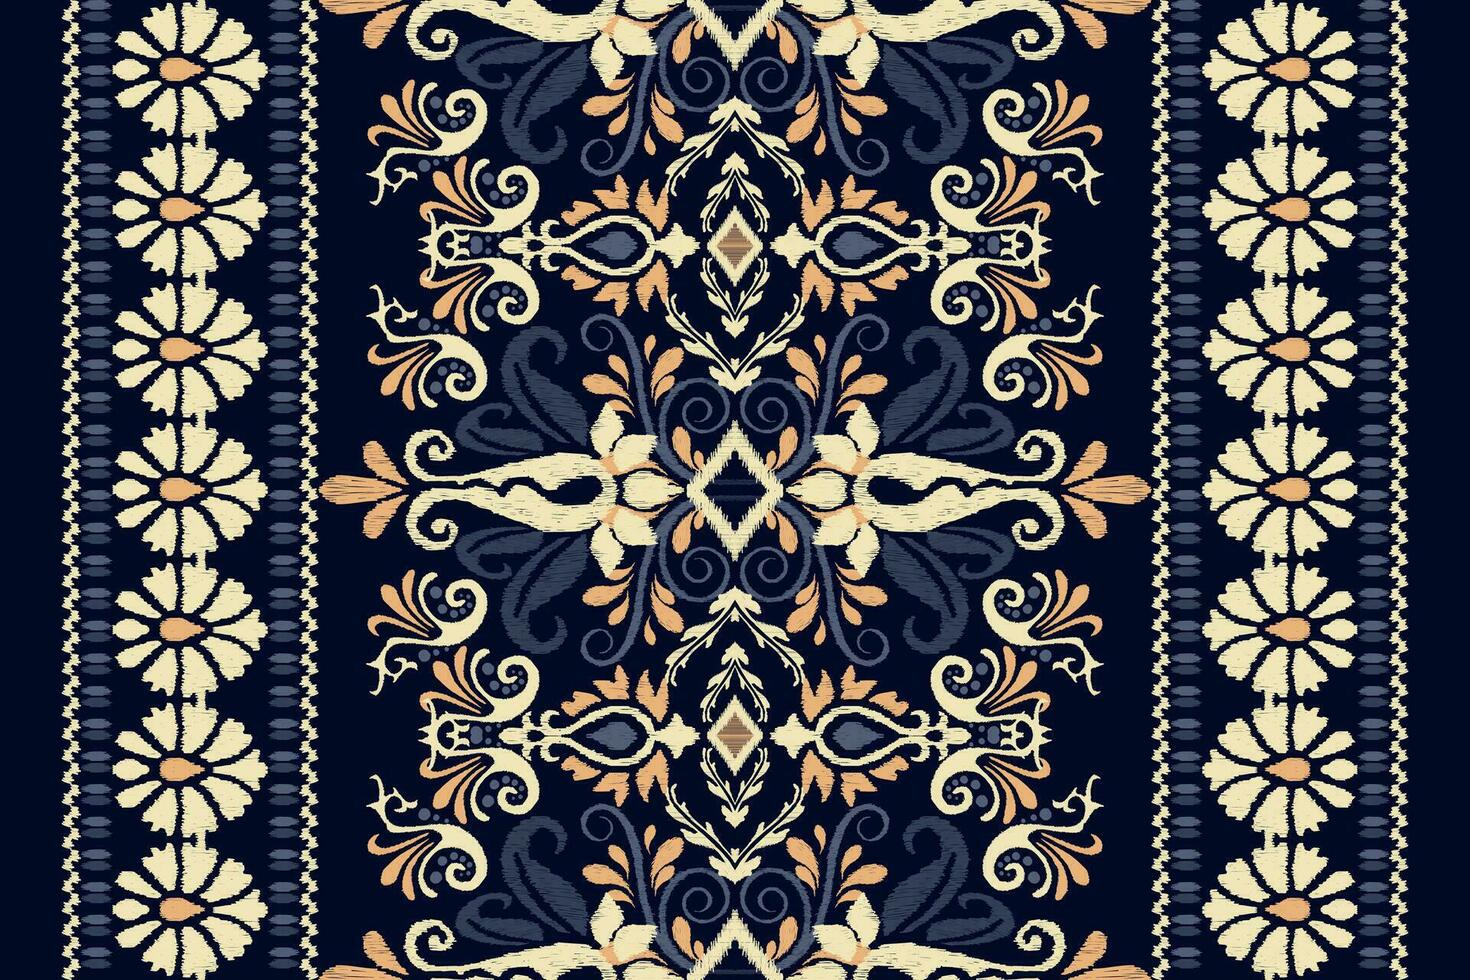 ikat blommig paisley broderi på Marin blå bakgrund.ikat etnisk orientalisk mönster traditionell.aztec stil abstrakt vektor illustration.design för textur, tyg, kläder, inslagning, dekoration, matta.